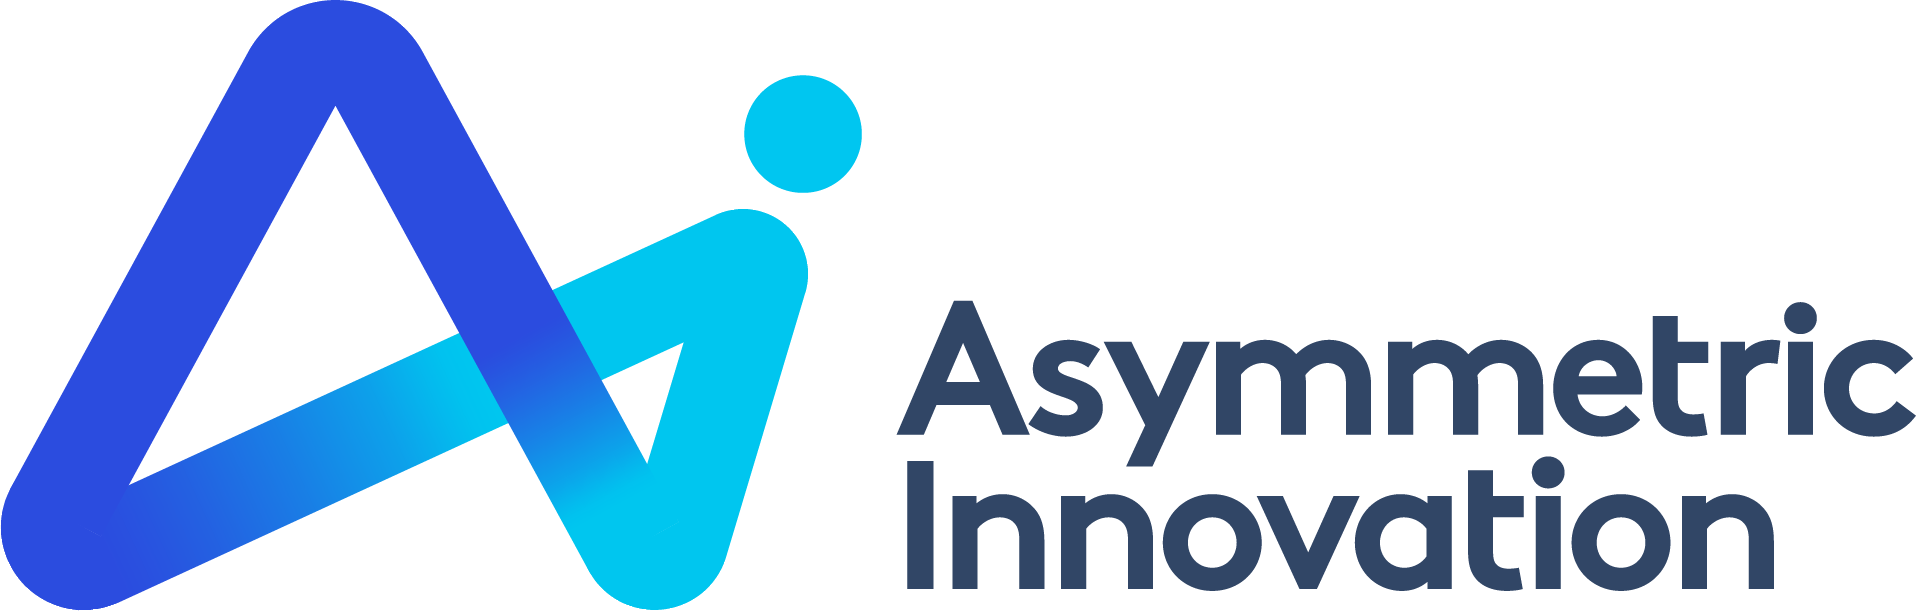 Asymetric Innovation